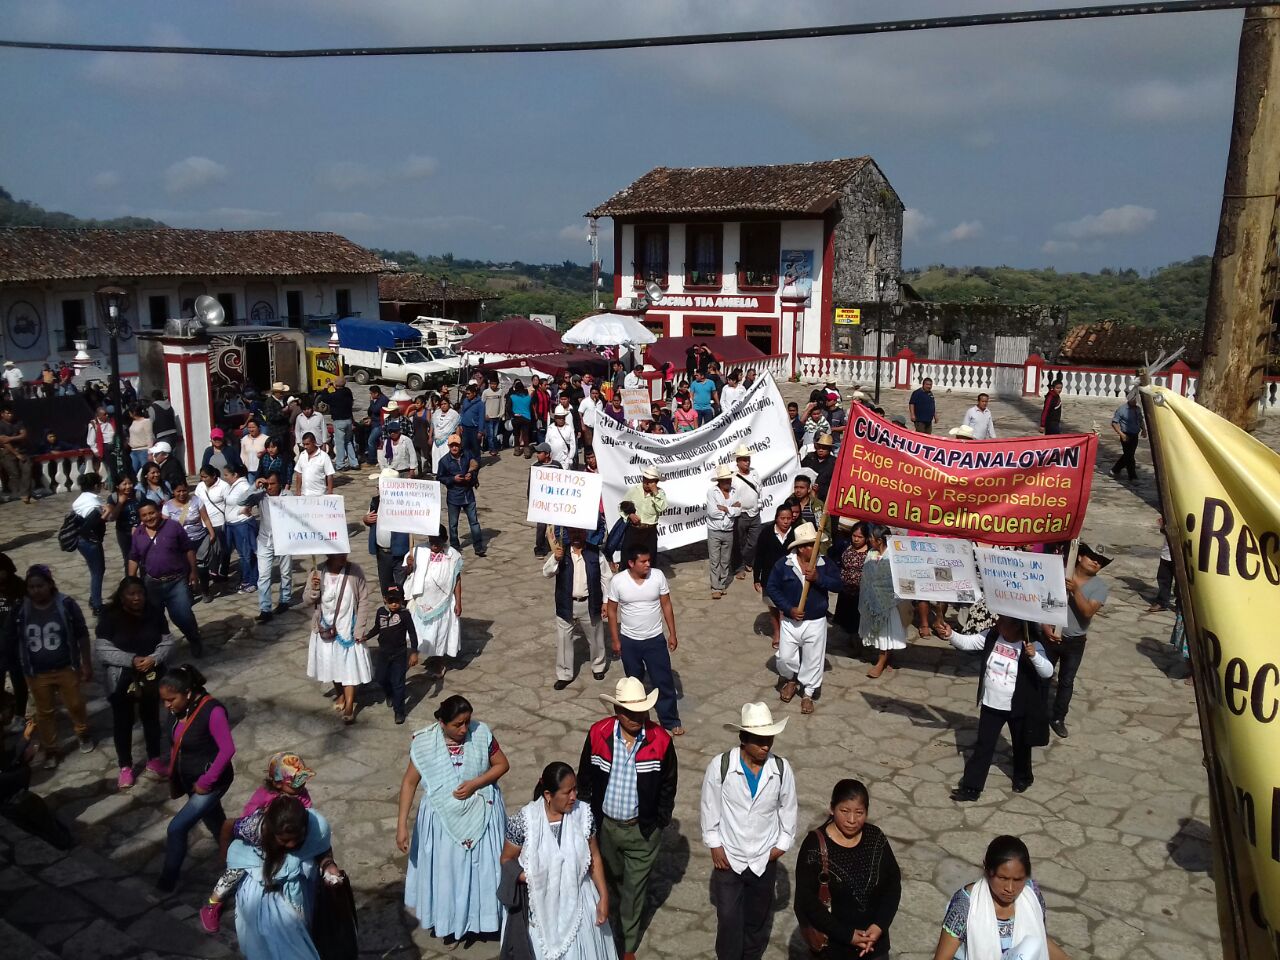 Delincuencia organizada opera en Cuetzalan, denuncian en manifestación